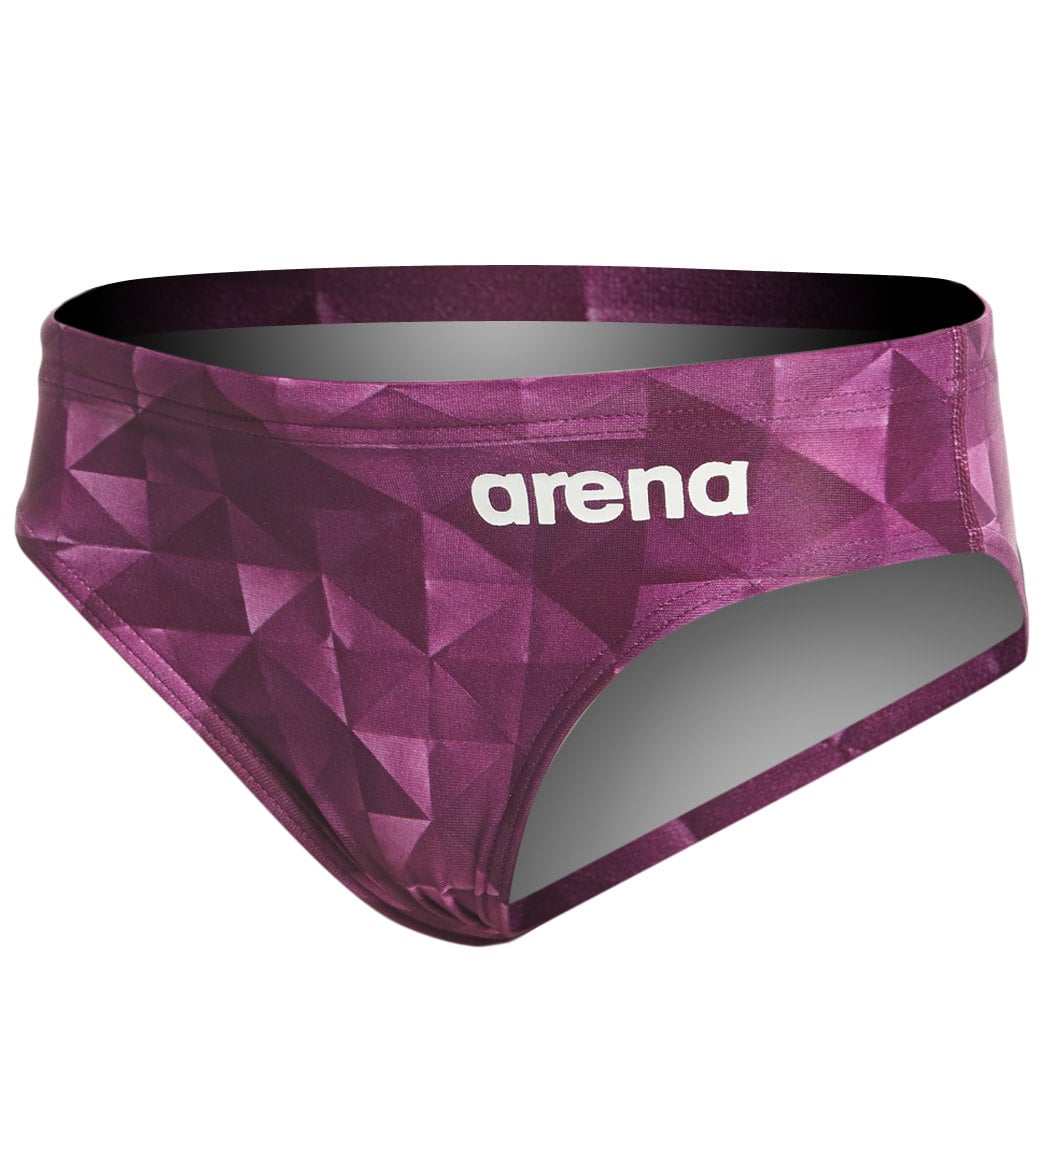 Arena Boys' Origami Maxlife Brief Swimsuit - Plum 22 - Swimoutlet.com